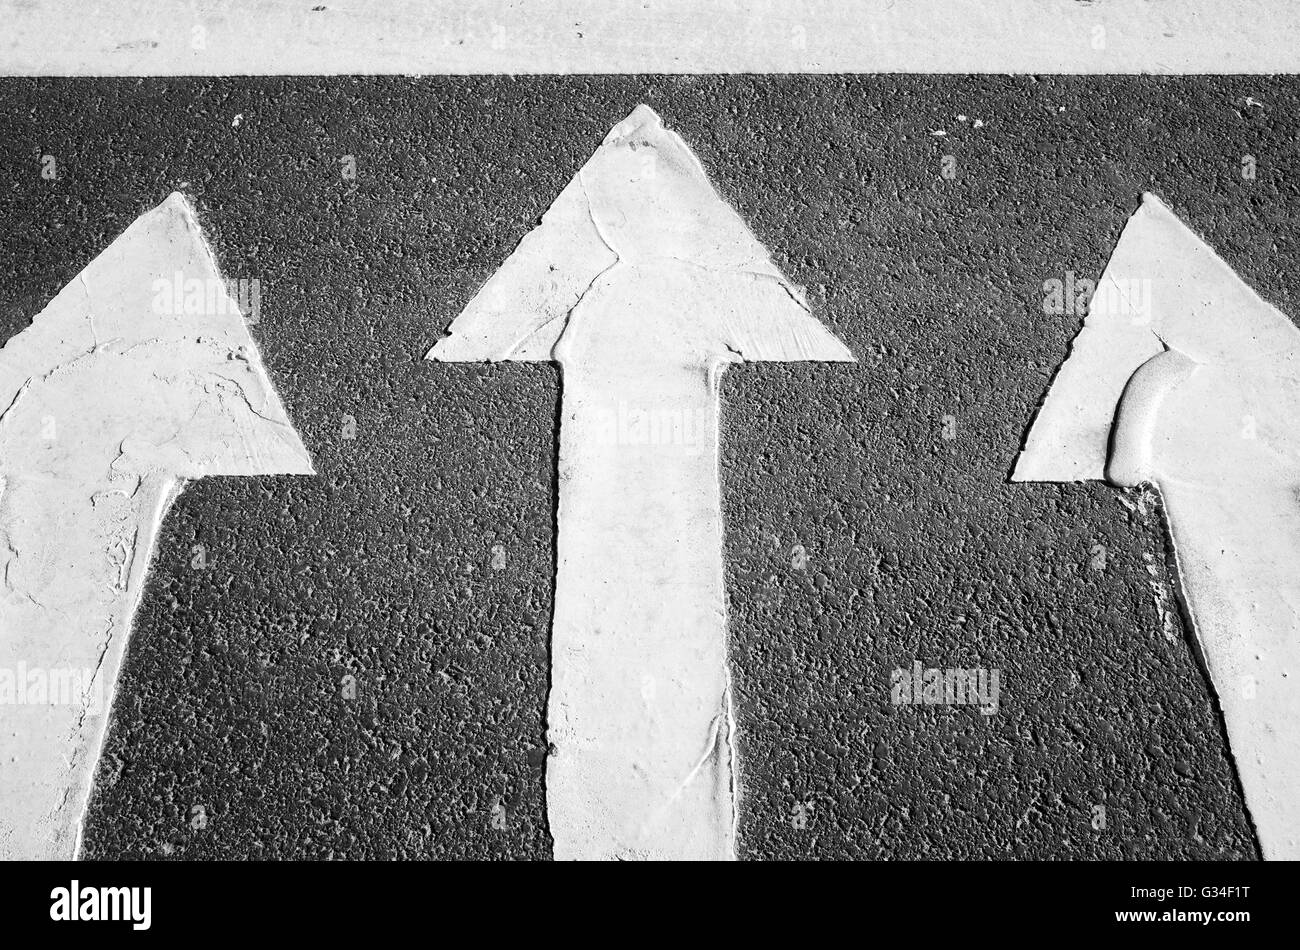 Las flechas de color blanco sobre el negro asfalto de carretera, cruce de peatones carretera fragmento de marcado Foto de stock